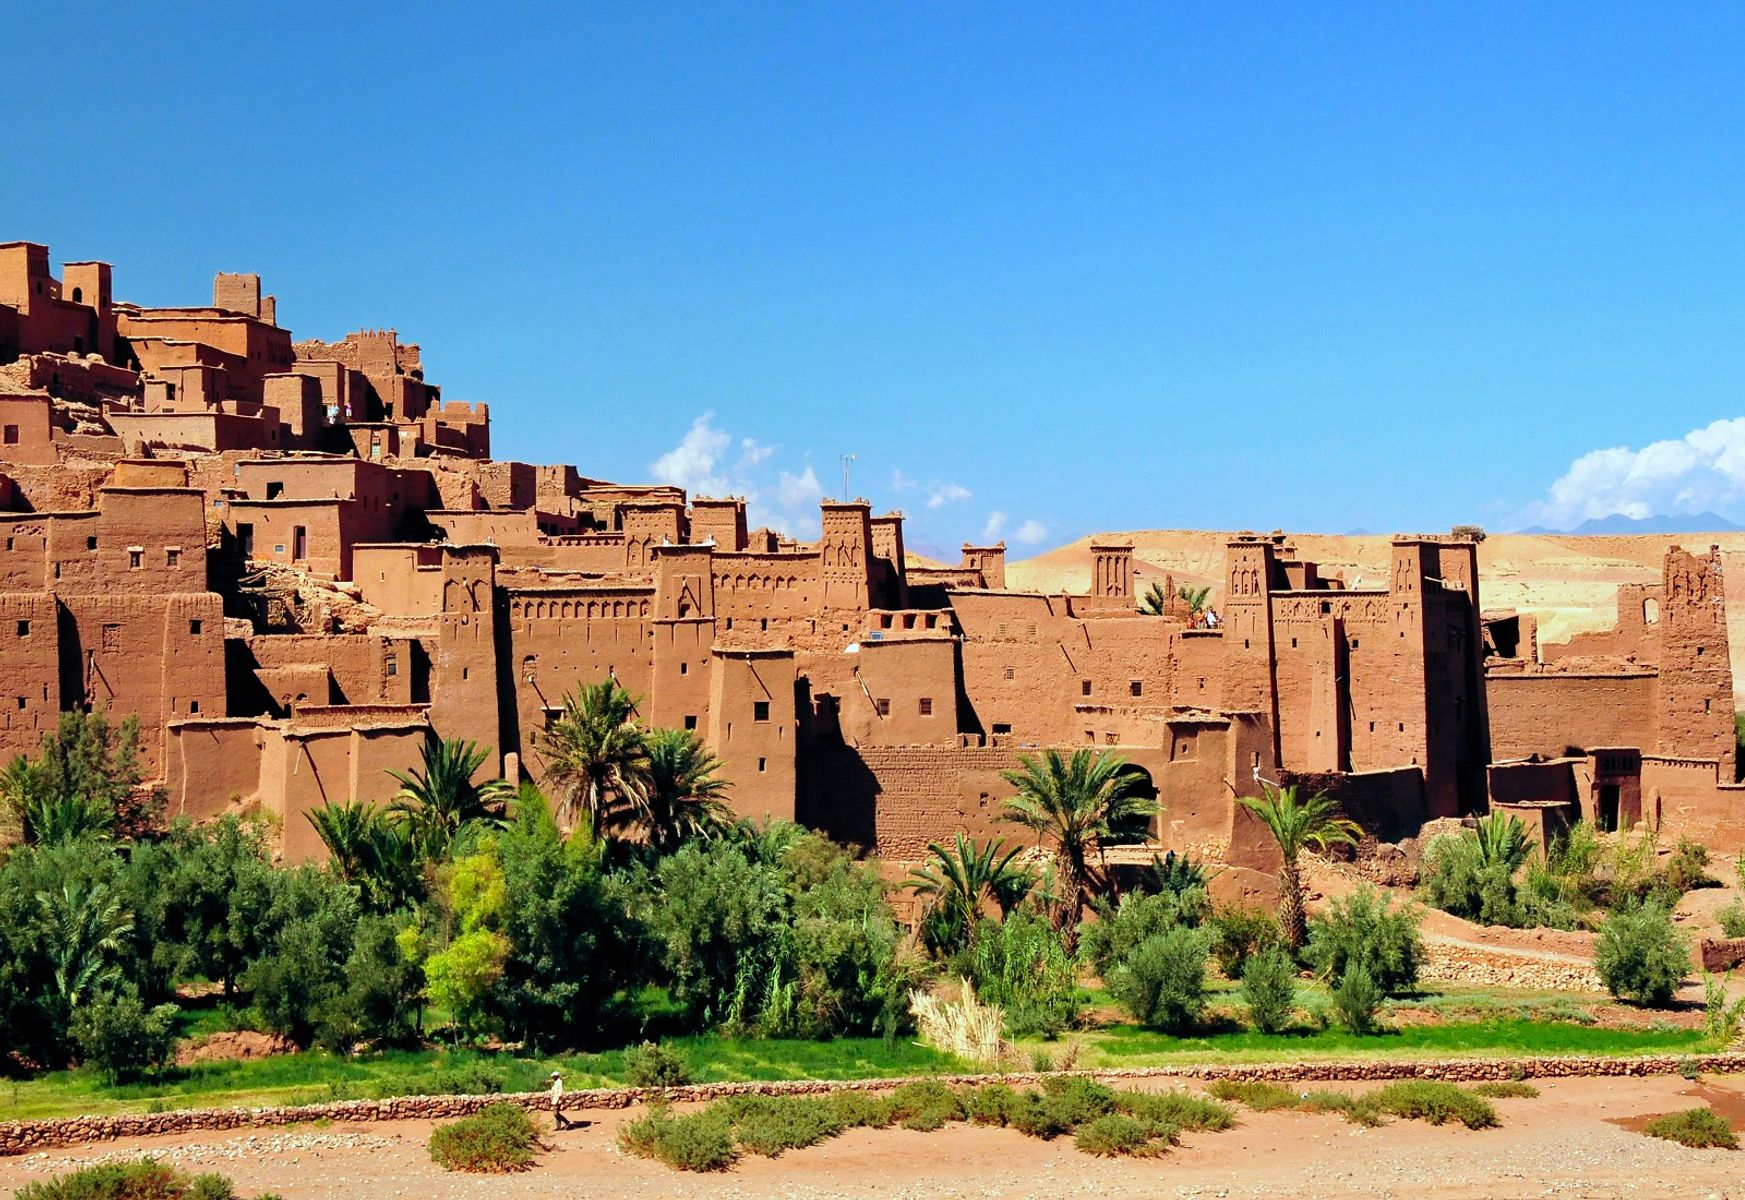 Marokko Reise: Ait-Ben-Haddou City